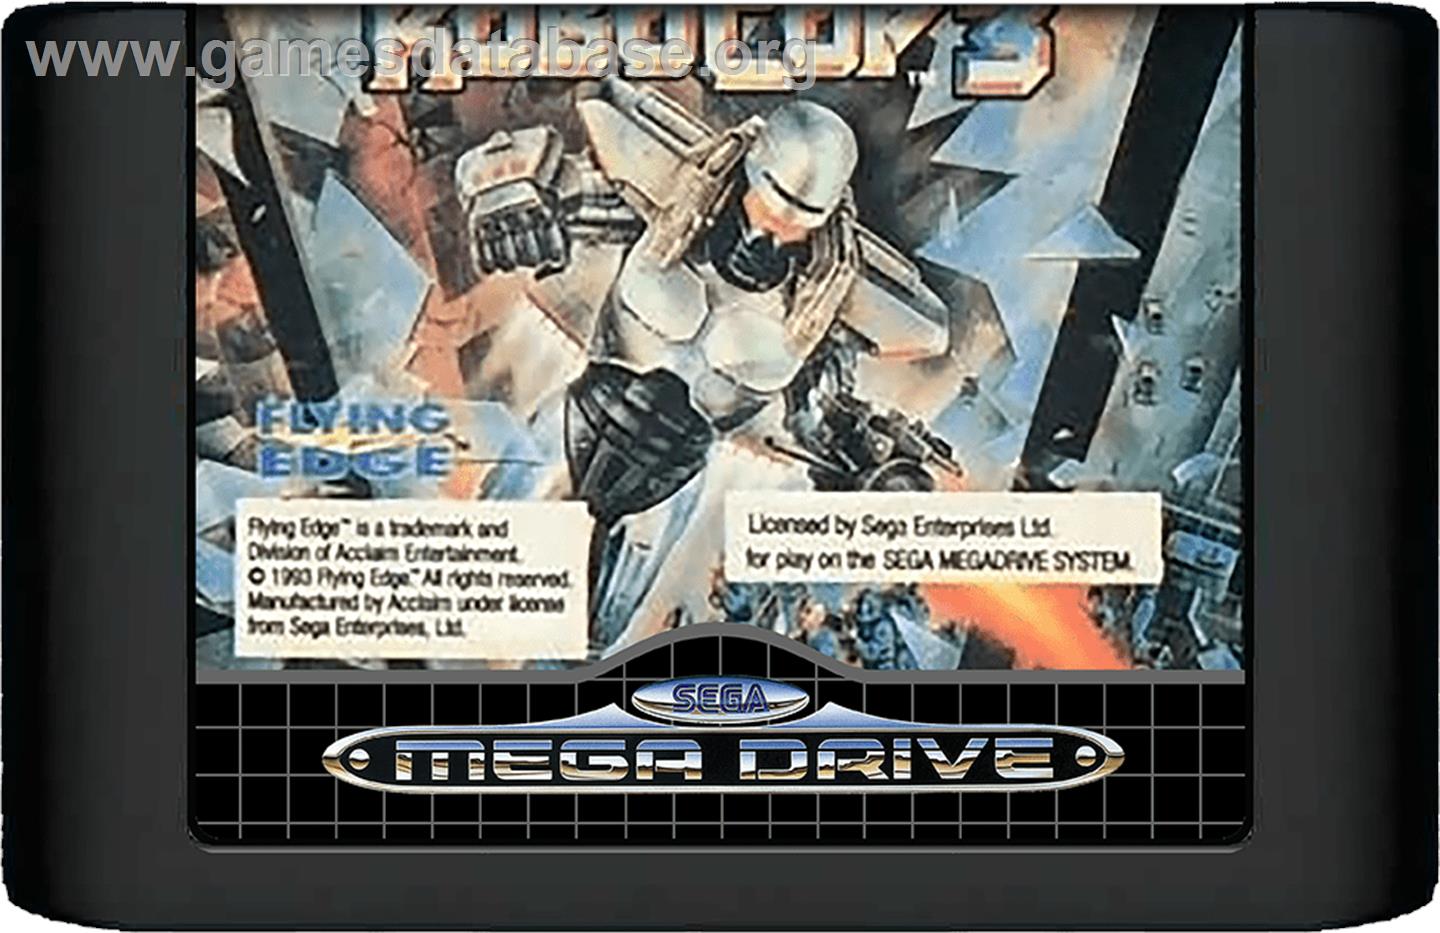 Robocop 3 - Sega Genesis - Artwork - Cartridge